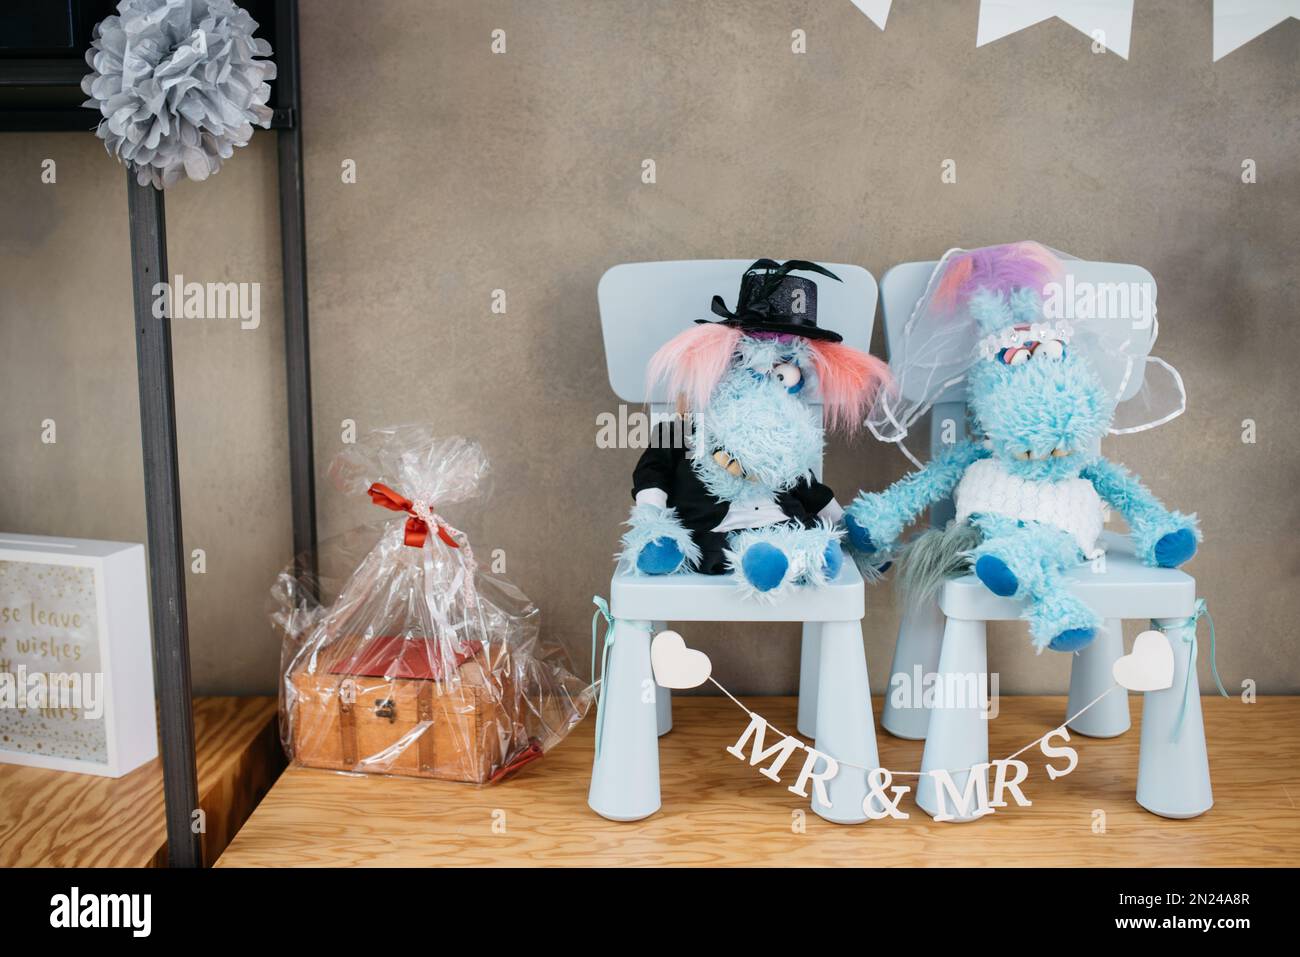 Eine Nahaufnahme von Stoffspielzeugen auf Spielzeugstühlen im Regal, die eine Braut und einen Bräutigam repräsentieren, das Konzept der Hochzeitsdekoration Stockfoto